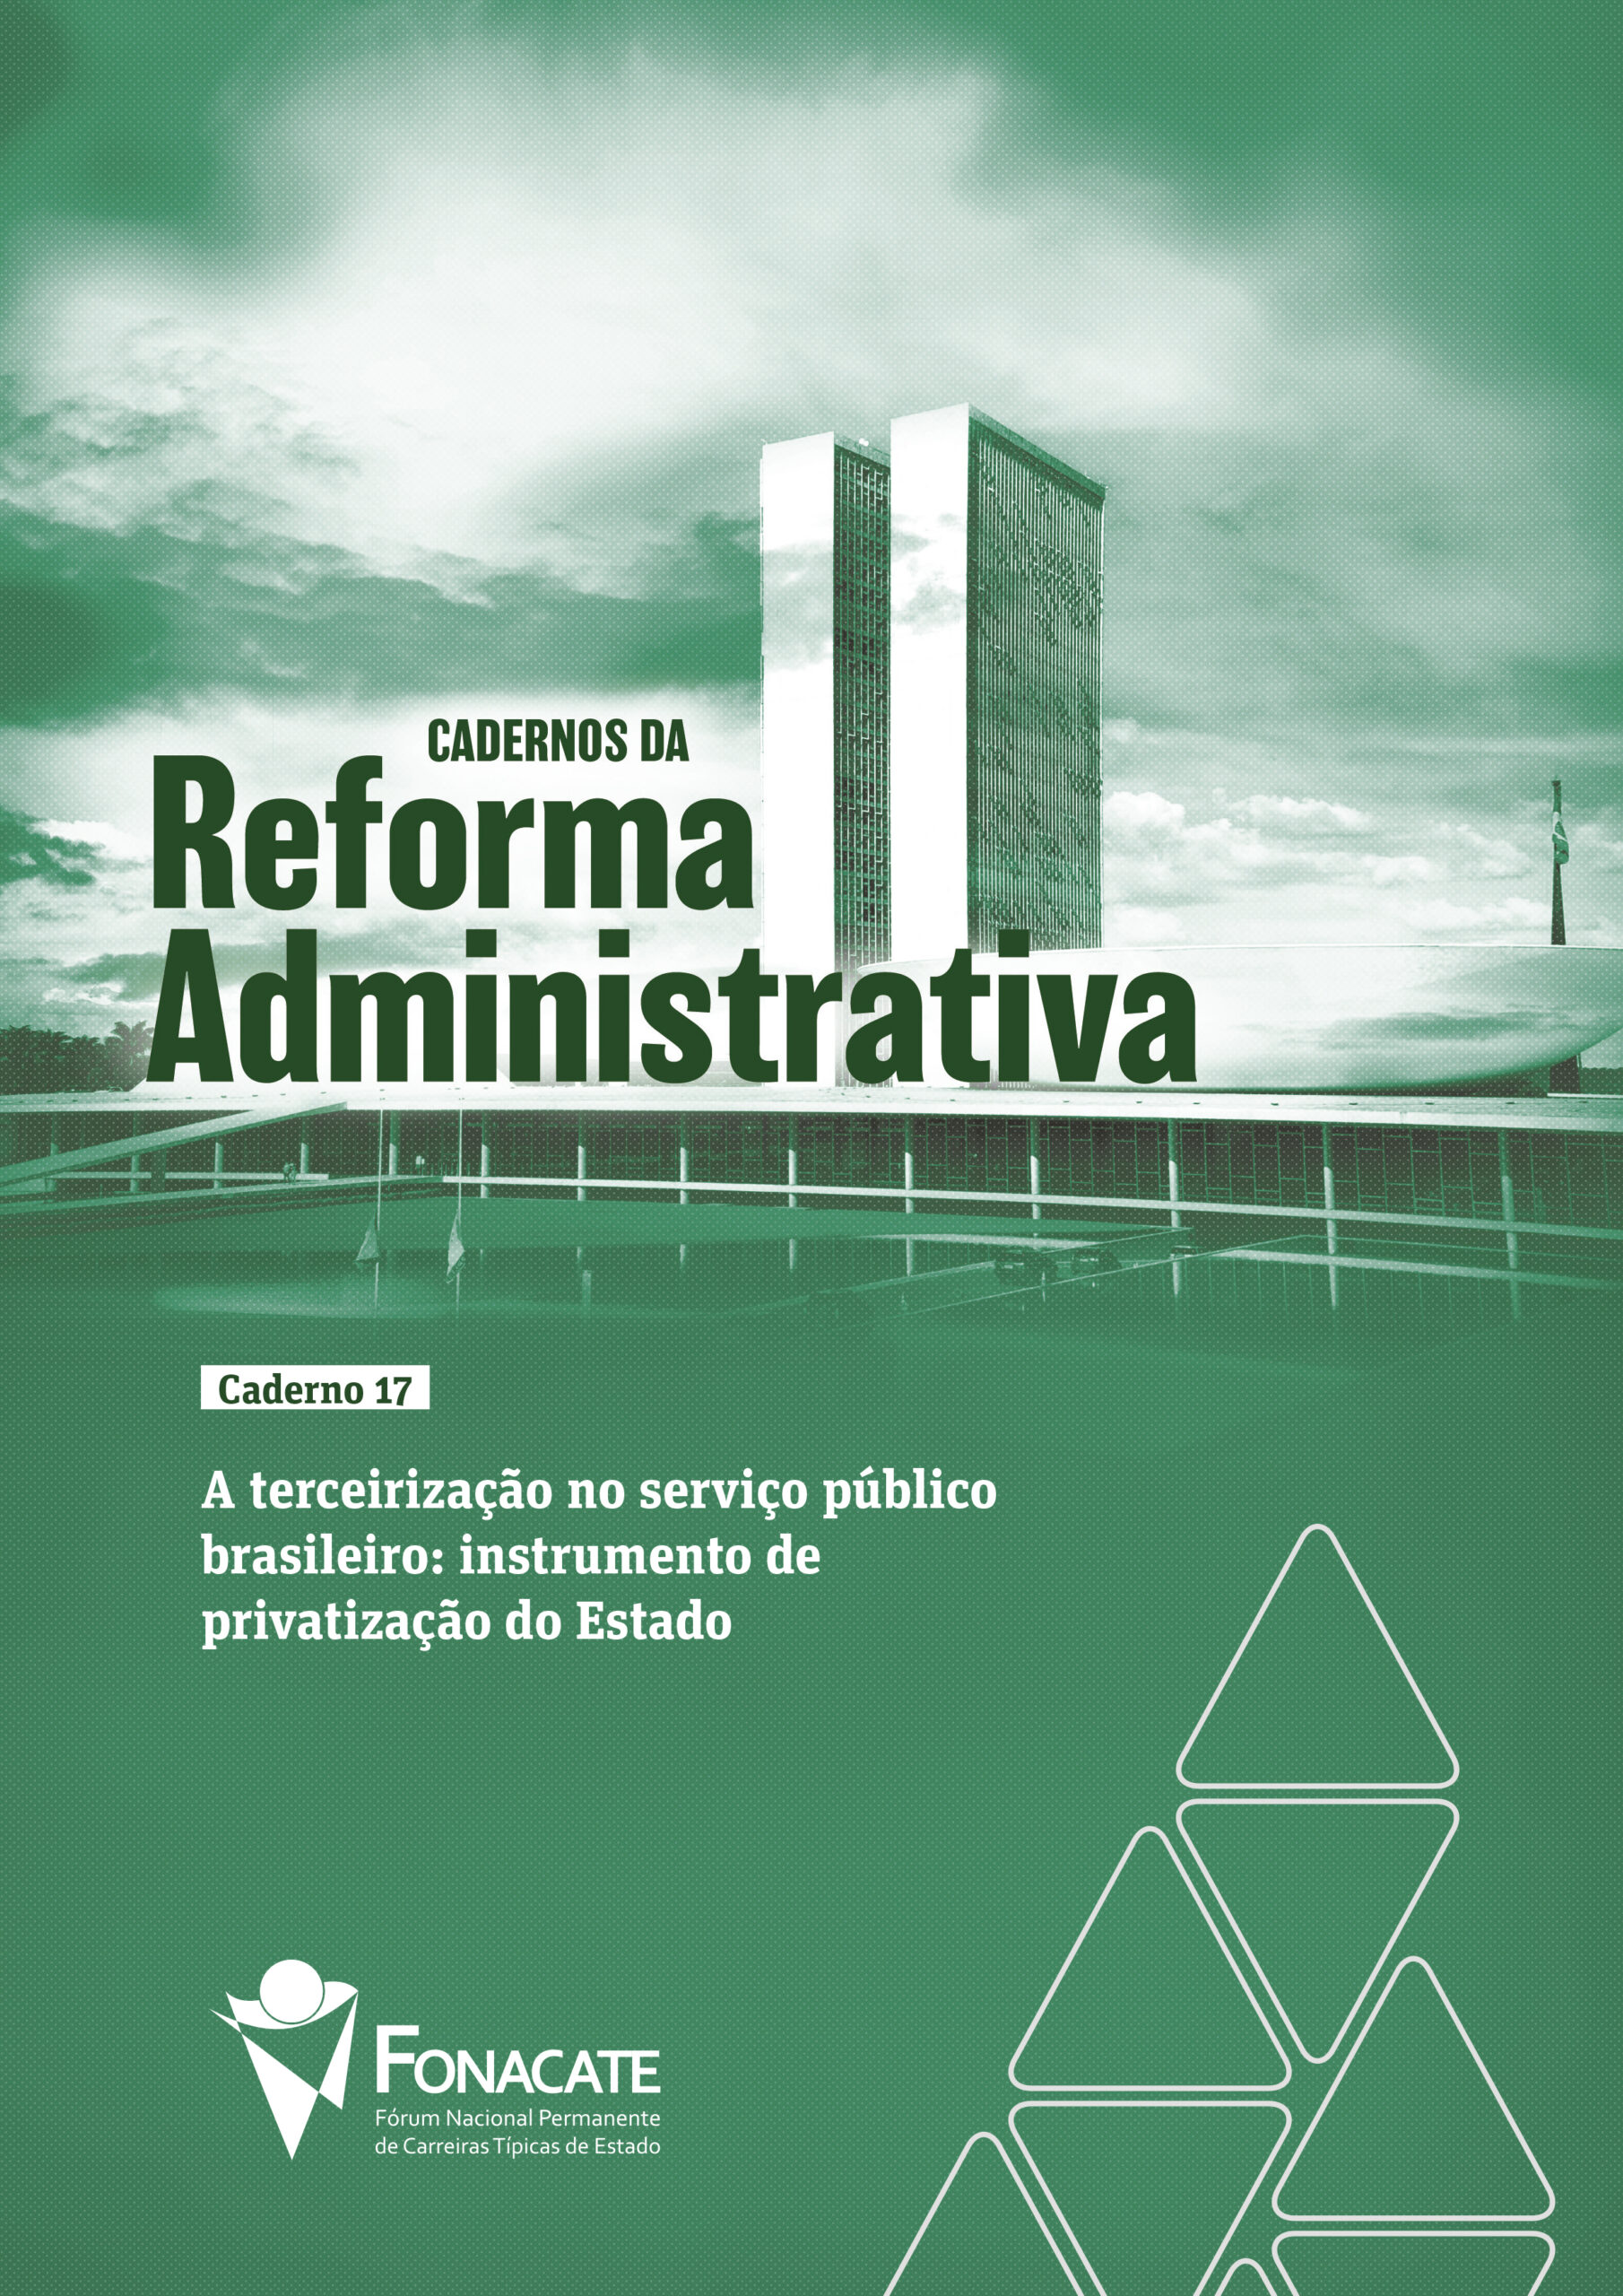 Caderno 17 – A terceirização no serviço público brasileiro: instrumento de privatização do Estado